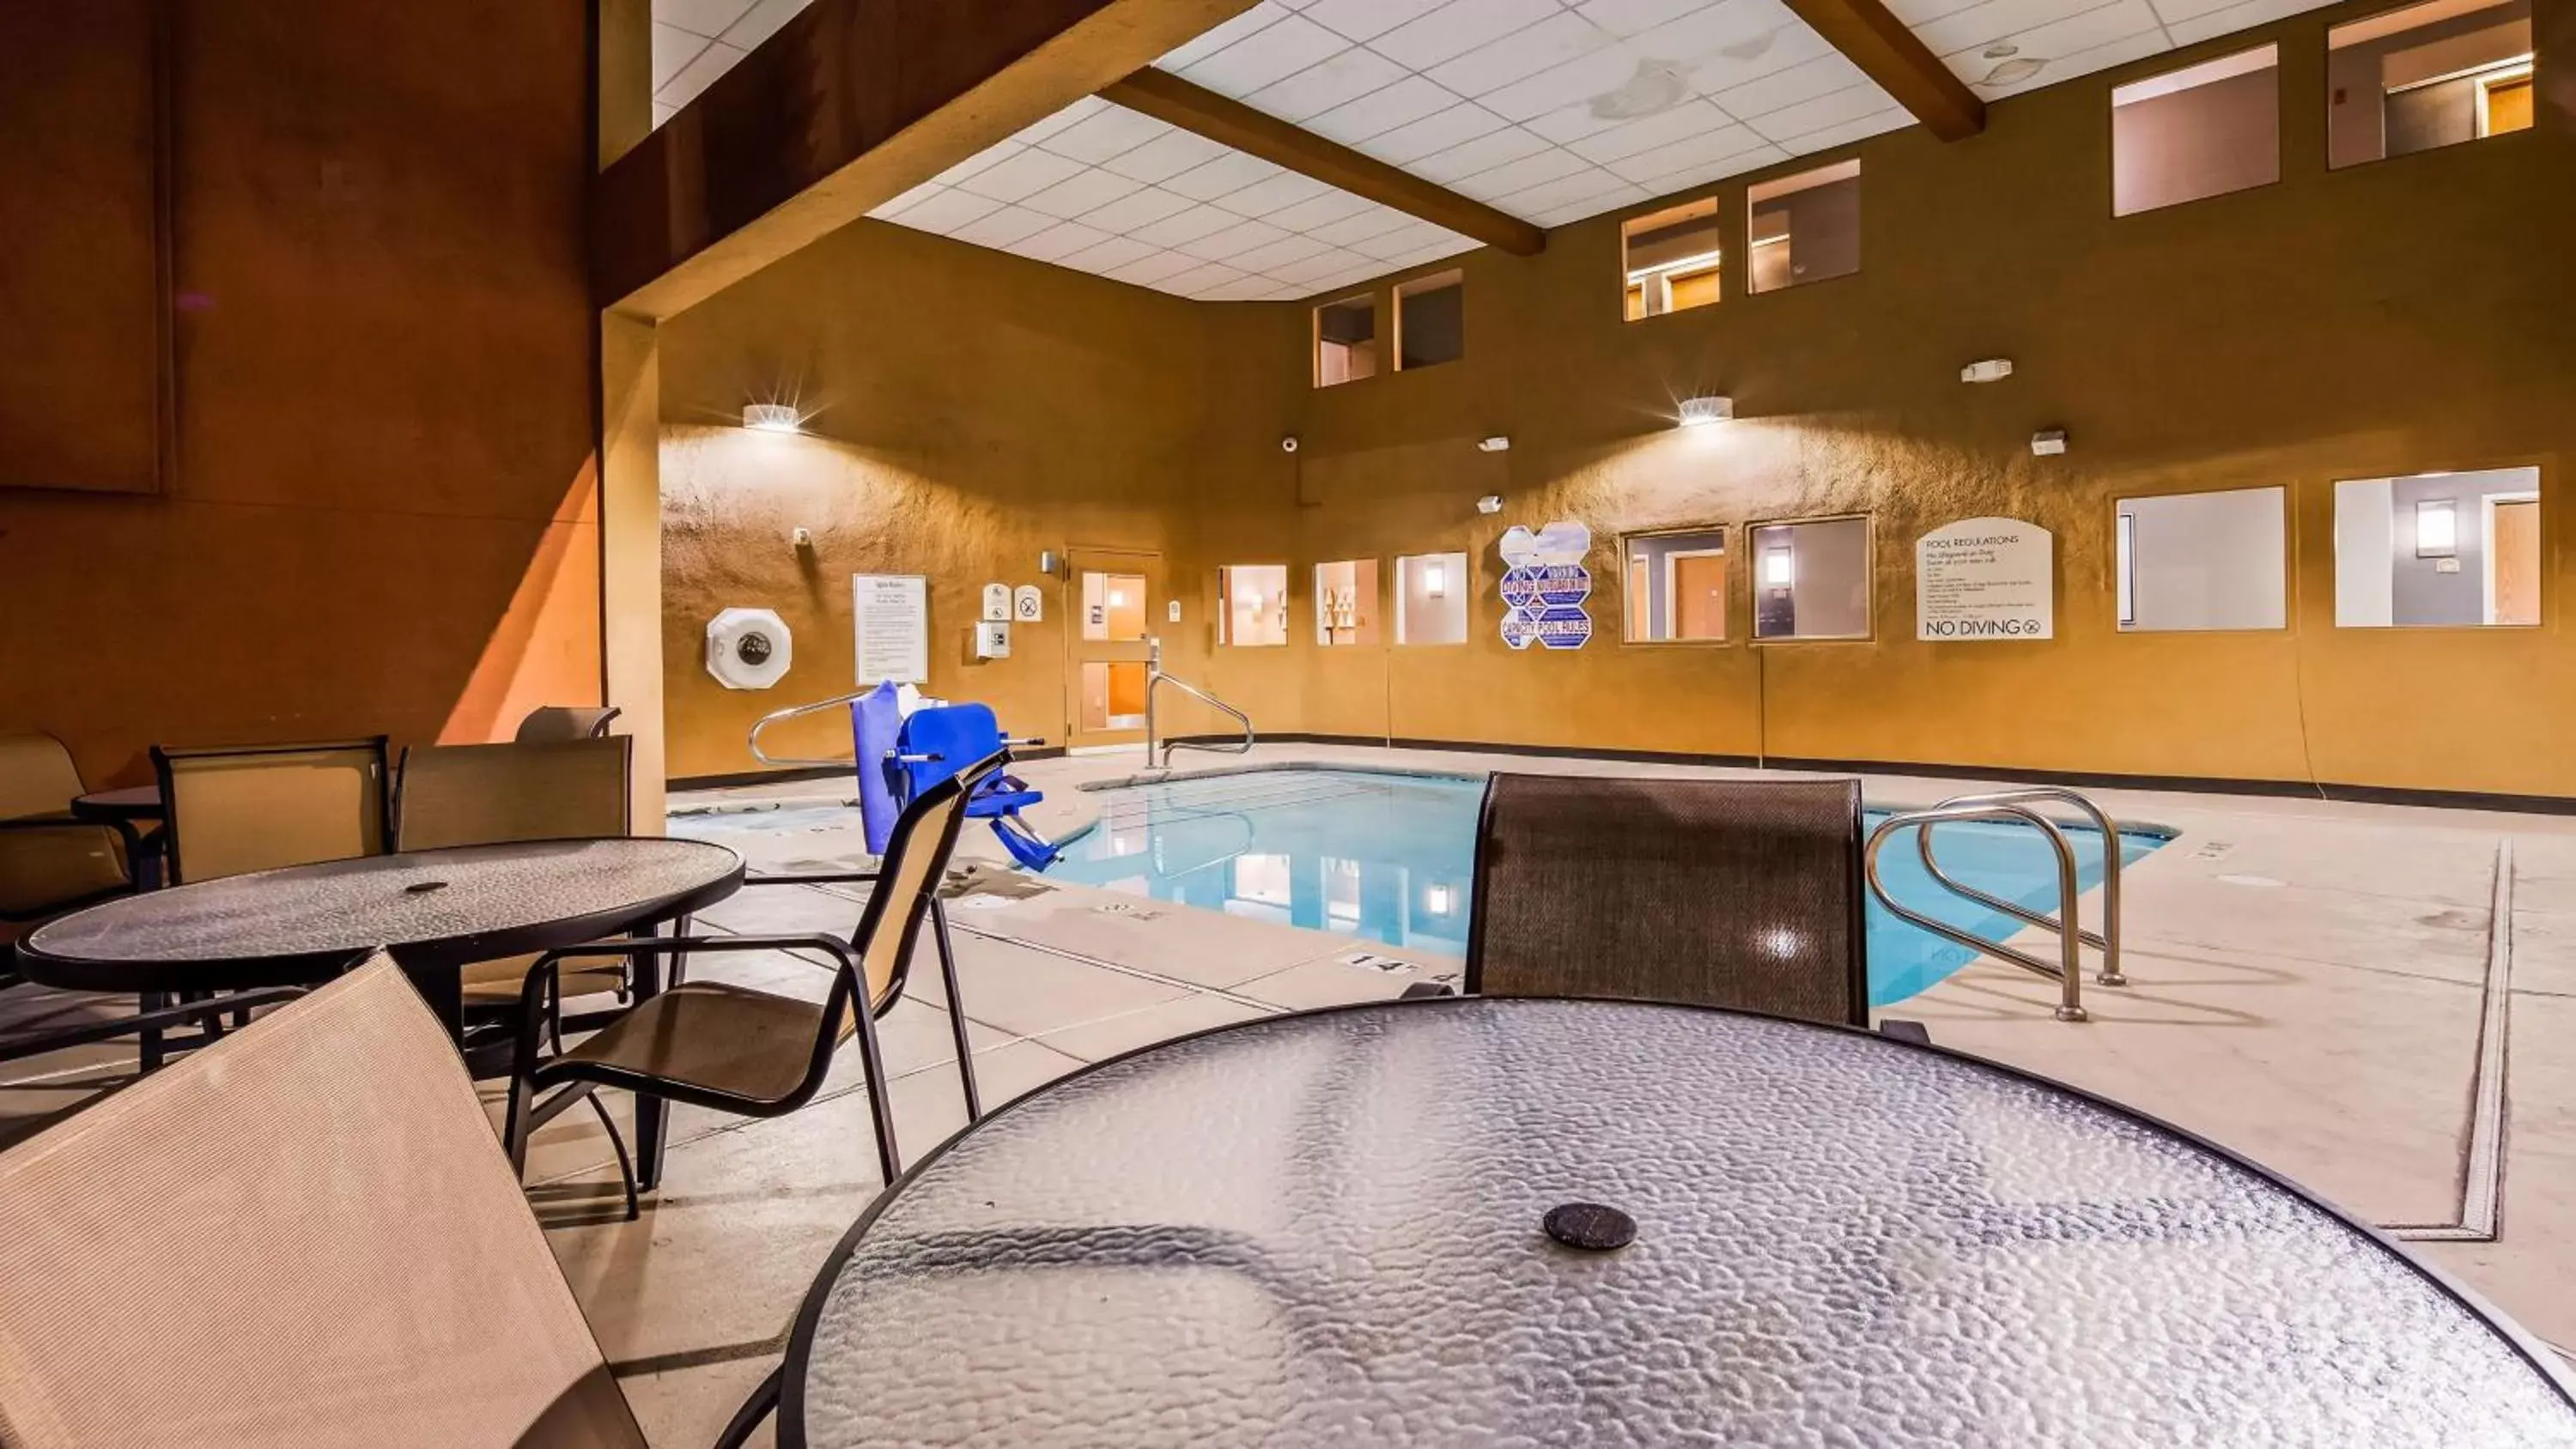 On site, Swimming Pool in Best Western Plus North Las Vegas Inn & Suites